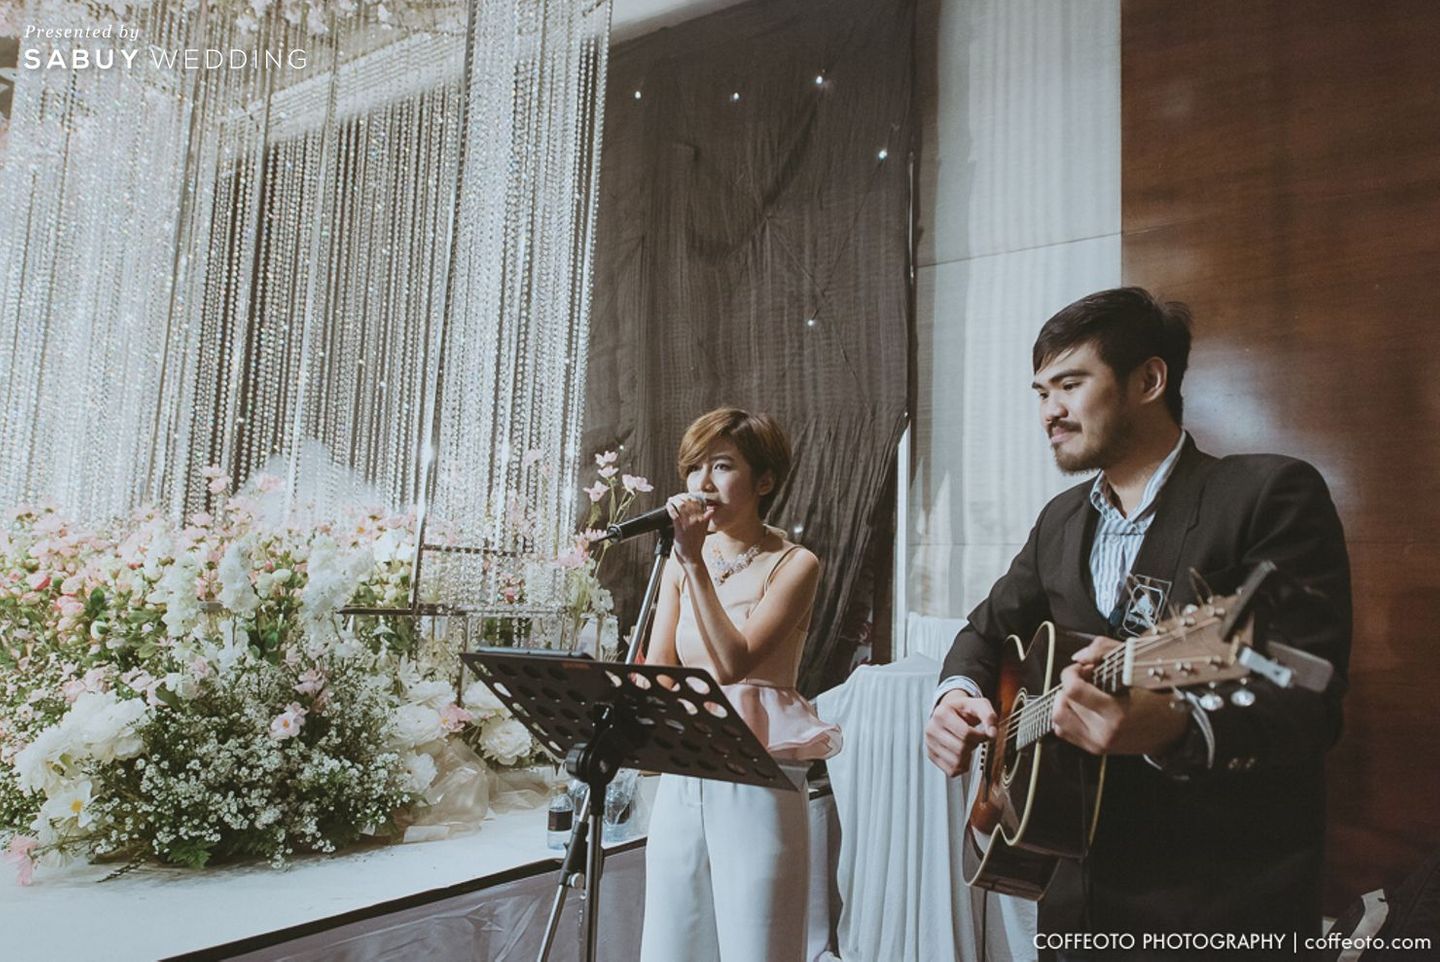 ดนตรีงานแต่ง,จัดดอกไม้งานแต่ง รีวิวงานแต่งธีม Villa Wing โบยบินไปกับความรัก ท่ามกลางดอกไม้แสนหวาน @The St. Regis Bangkok